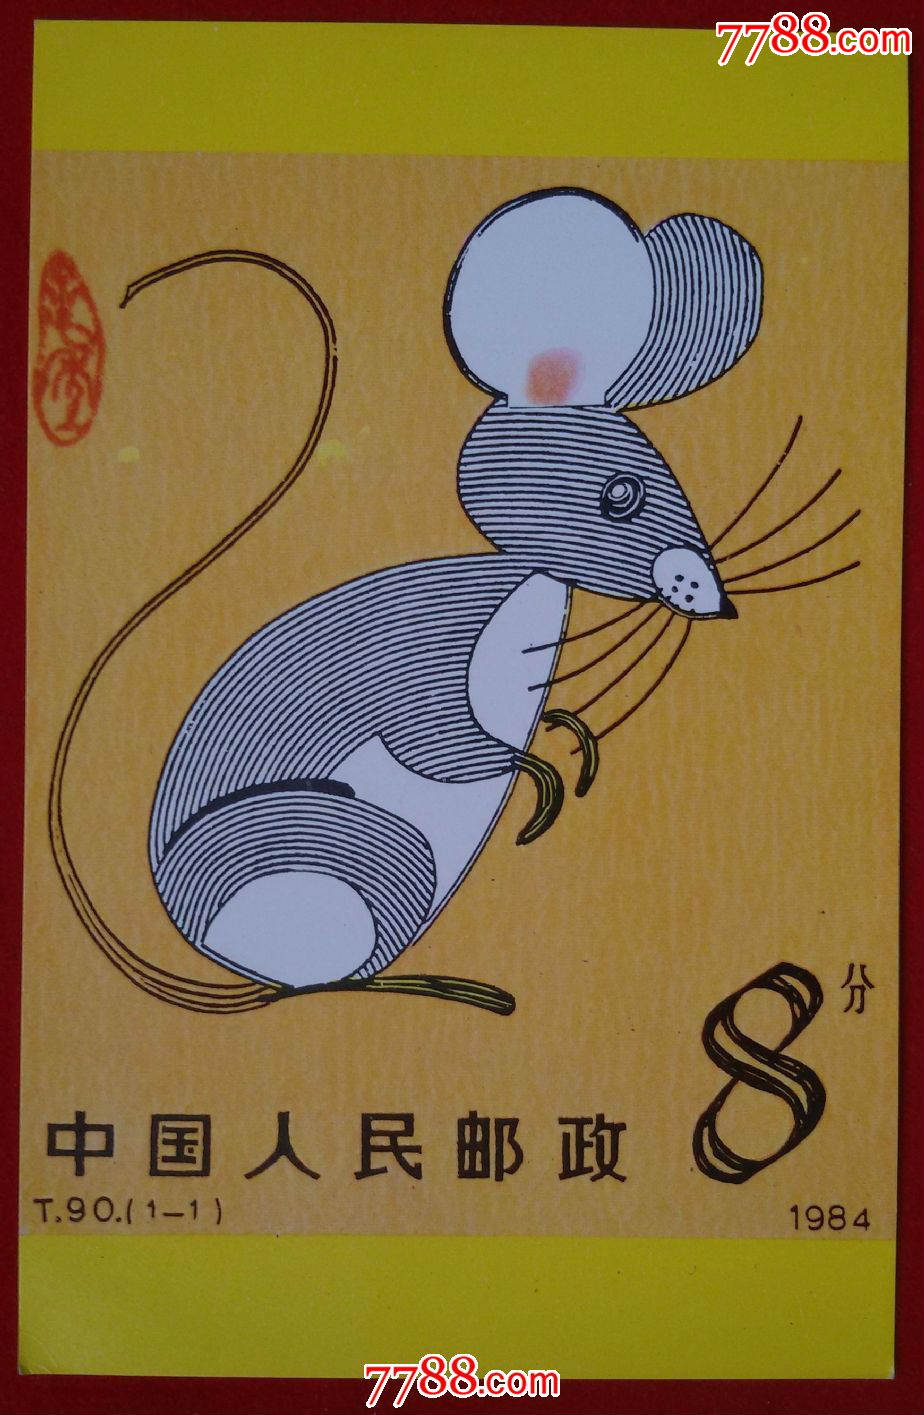 天津市邮票公司鼠生肖明信片